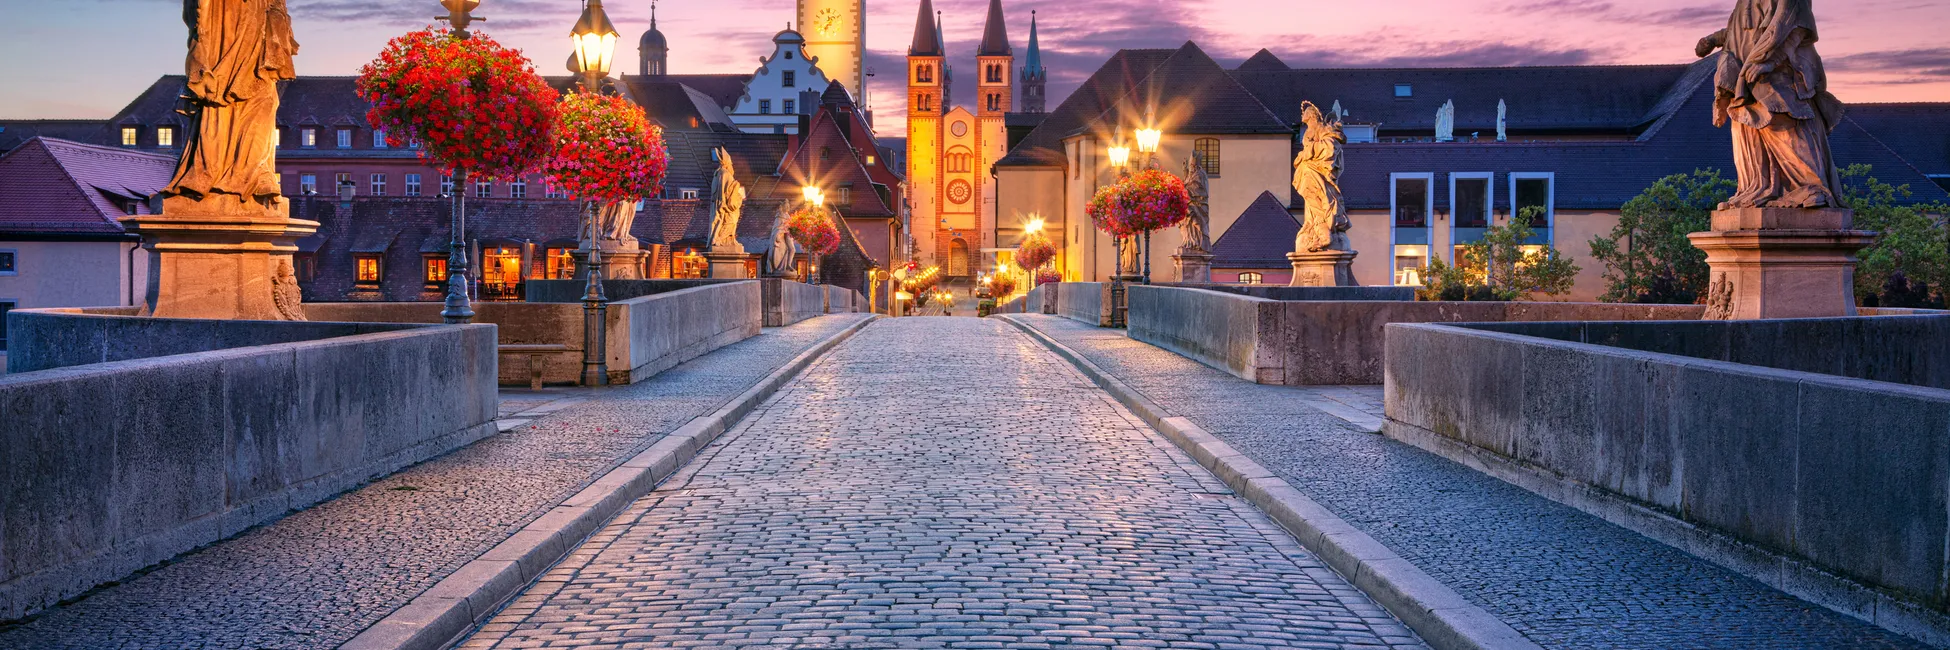 Vieux Wurtzbourg de nuit 